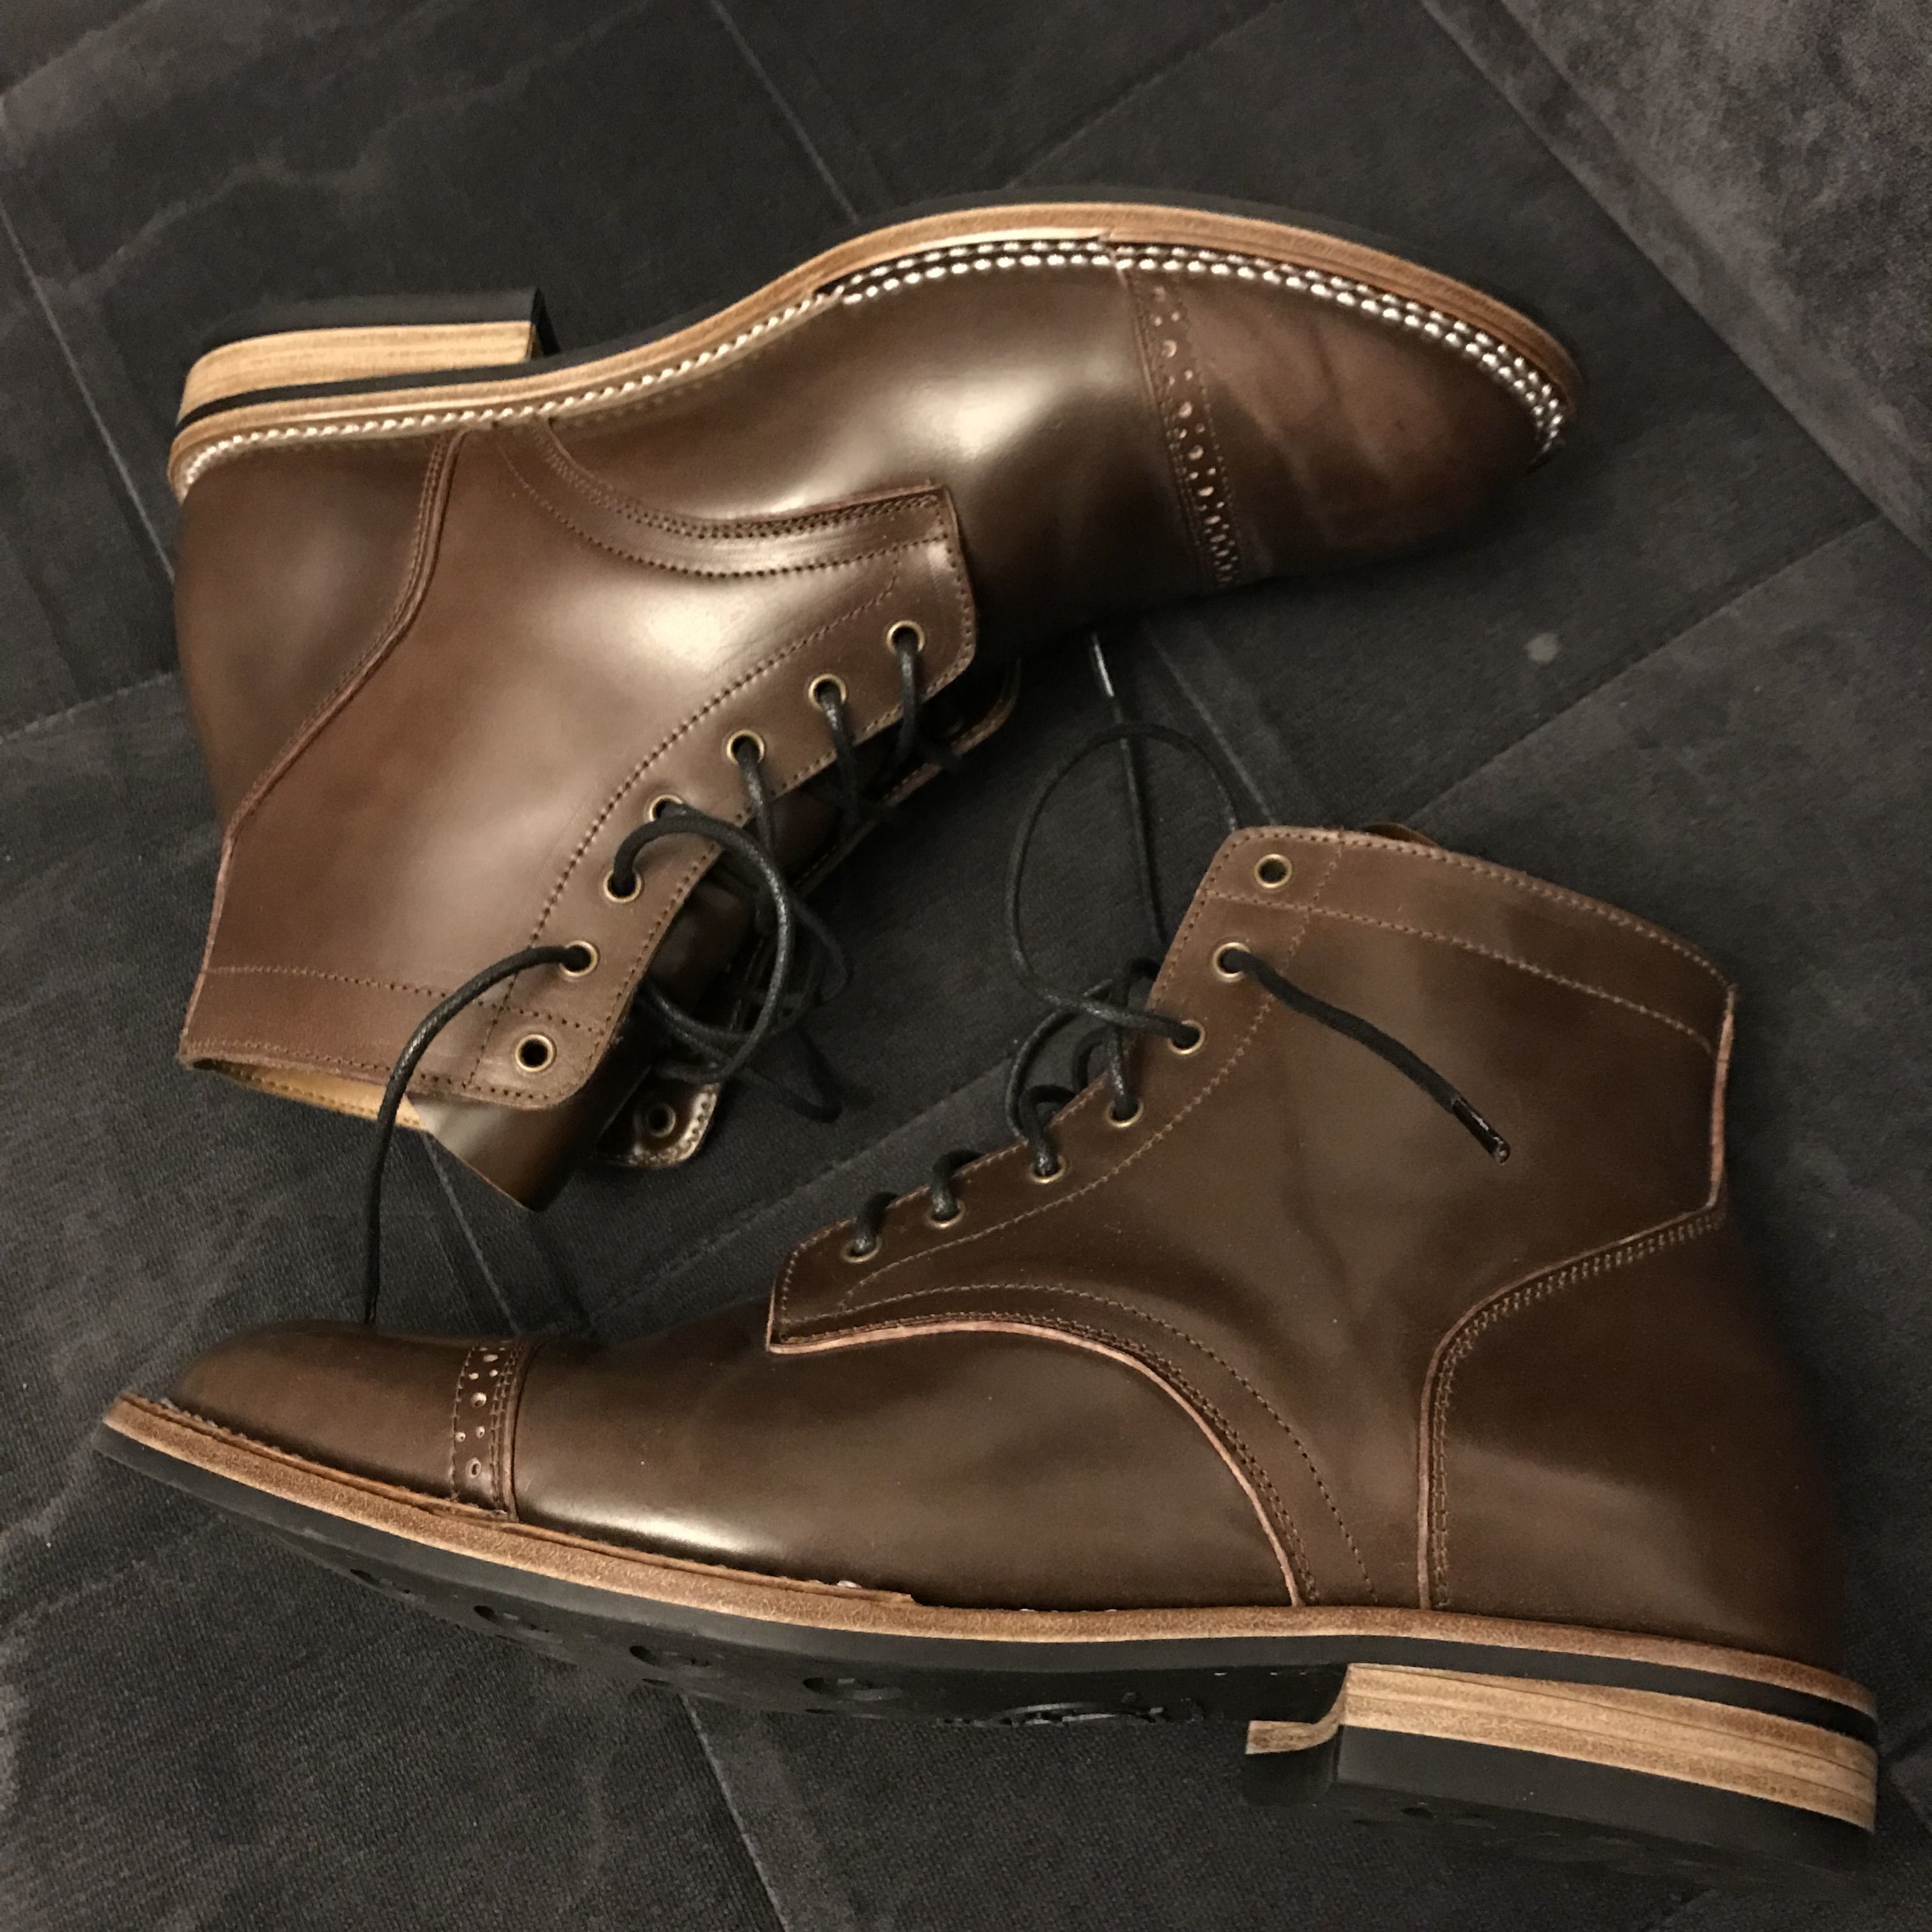 Junkard Boots | Styleforum